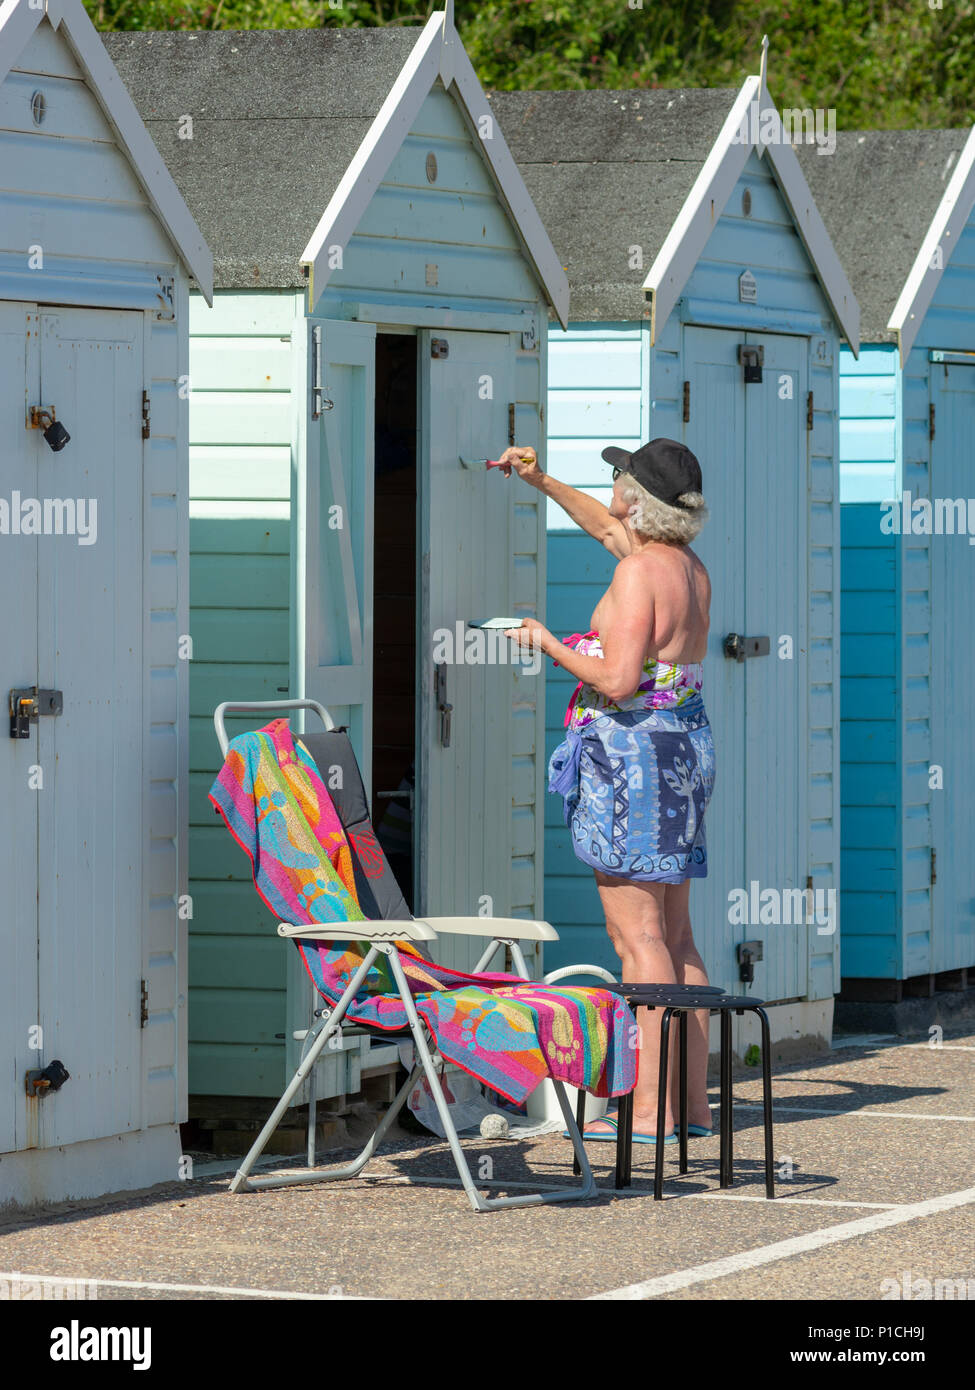 Einer der vielen bunten Badekabinen an der Promenade von Bournemouth, Dorset, England, UK, Sommer Wartung mit einem frischen Anstrich. Stockfoto